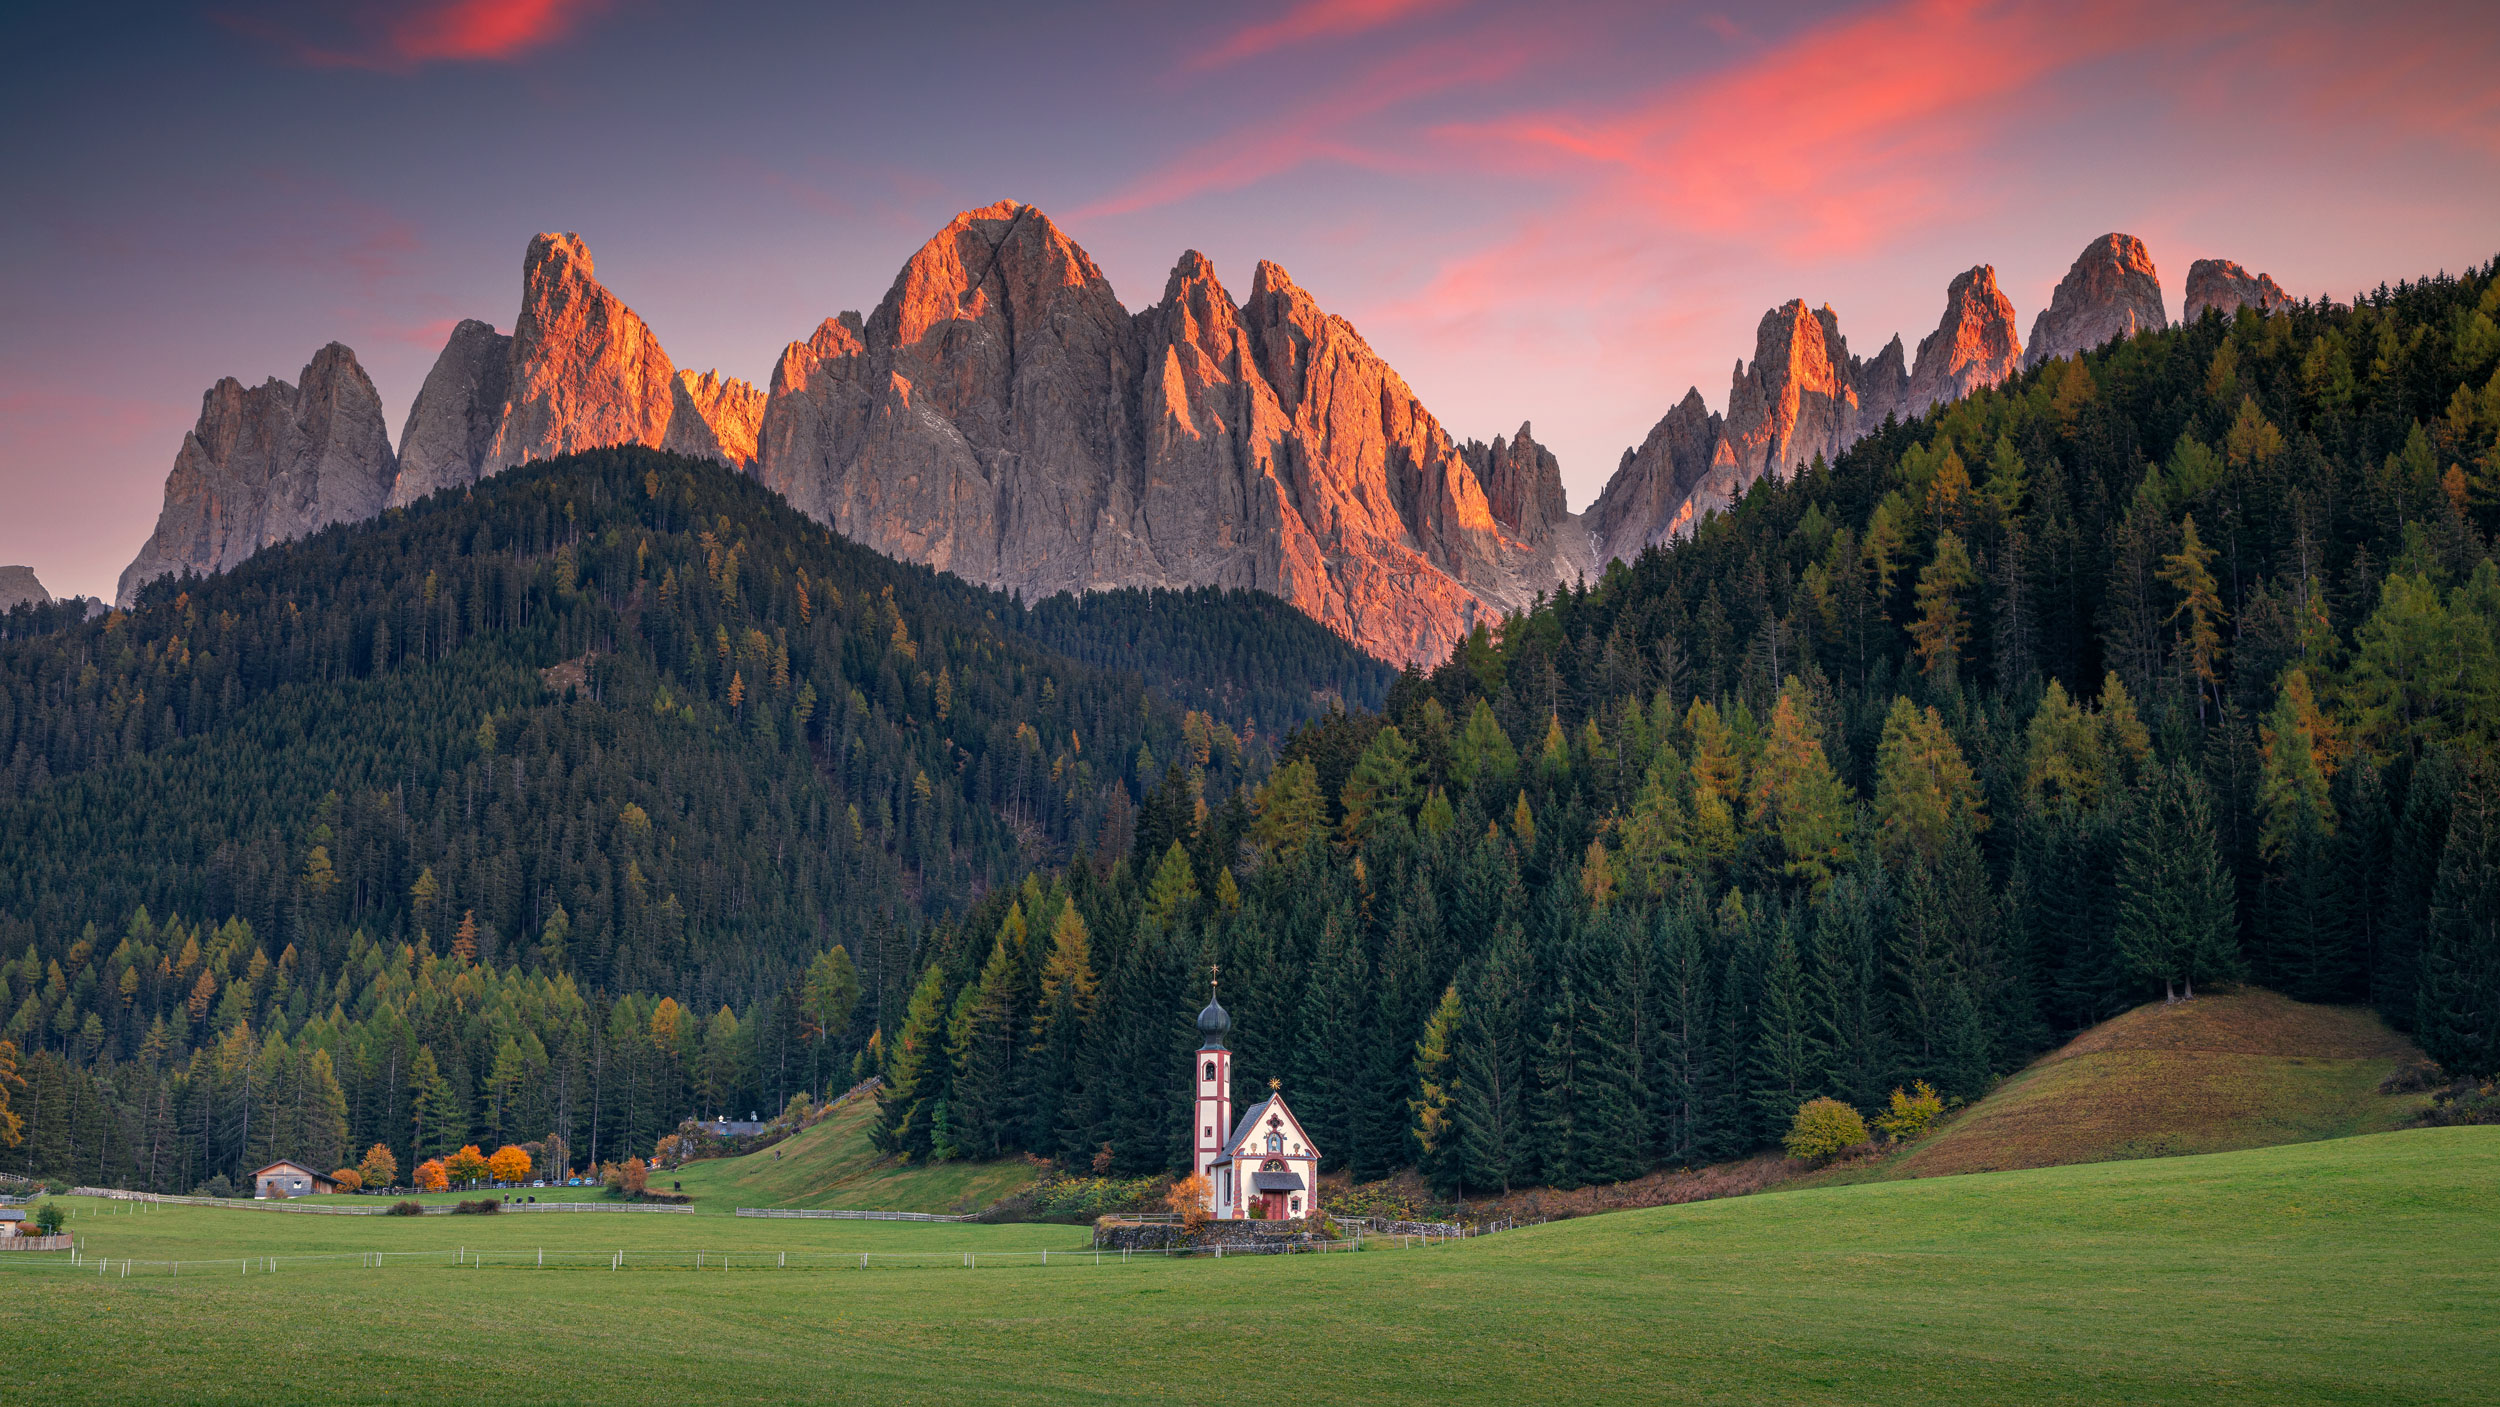 Italy: The Dolomites, Bolzano to Ora
